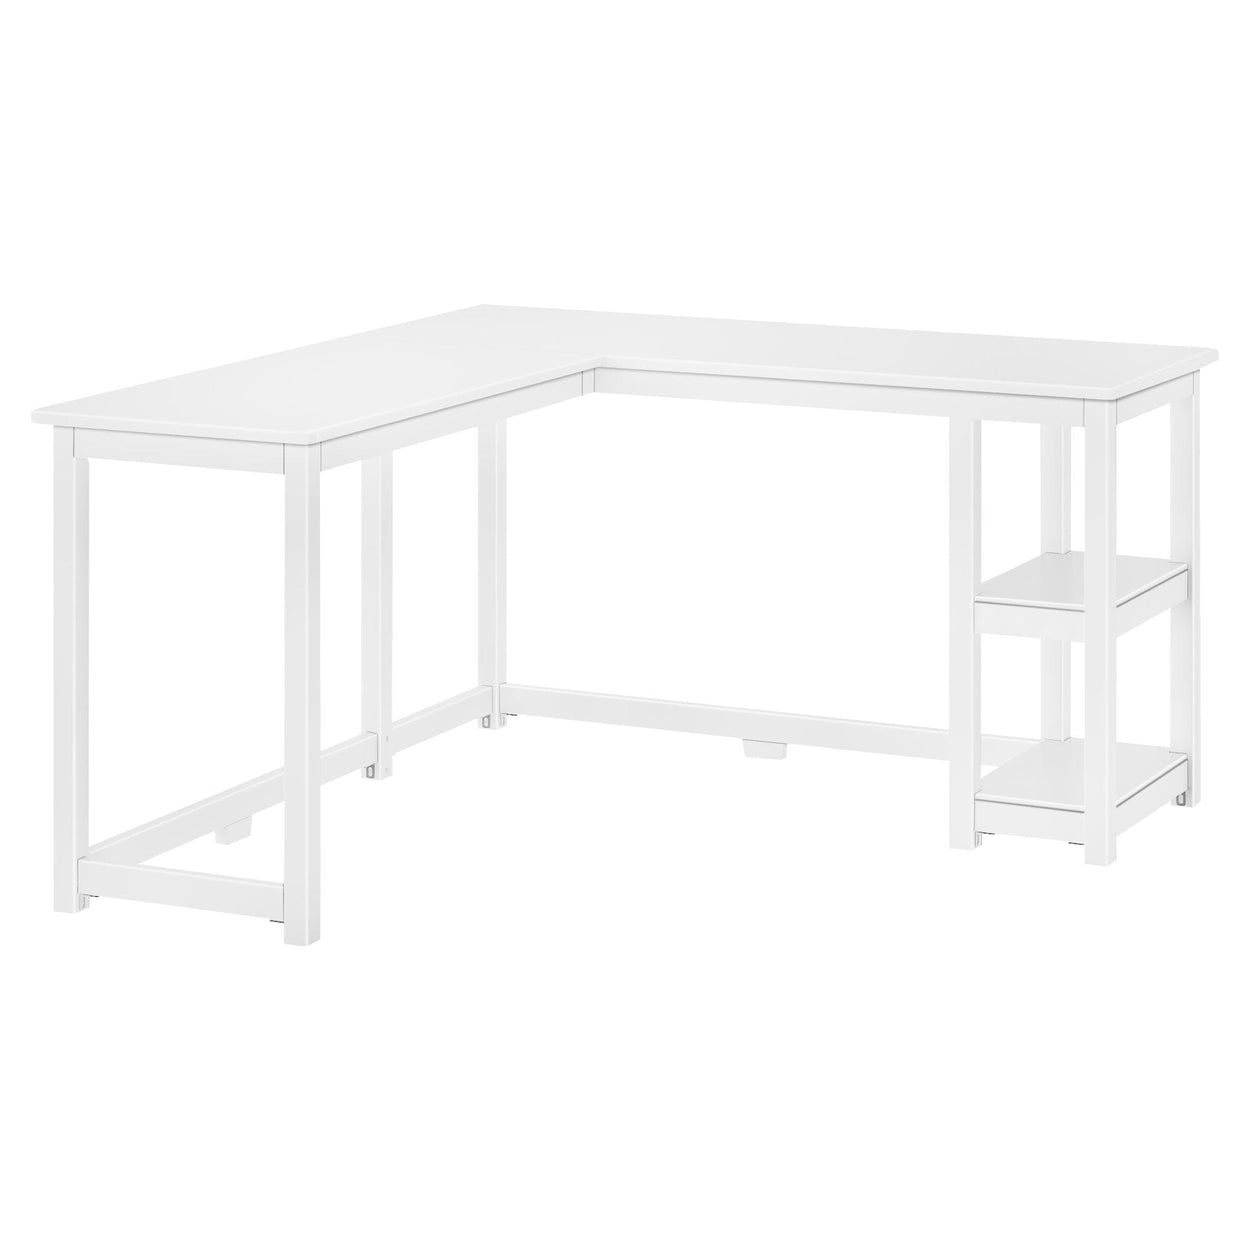 181450-002 : Furniture K/D Corner Desk w/ Shelves, White